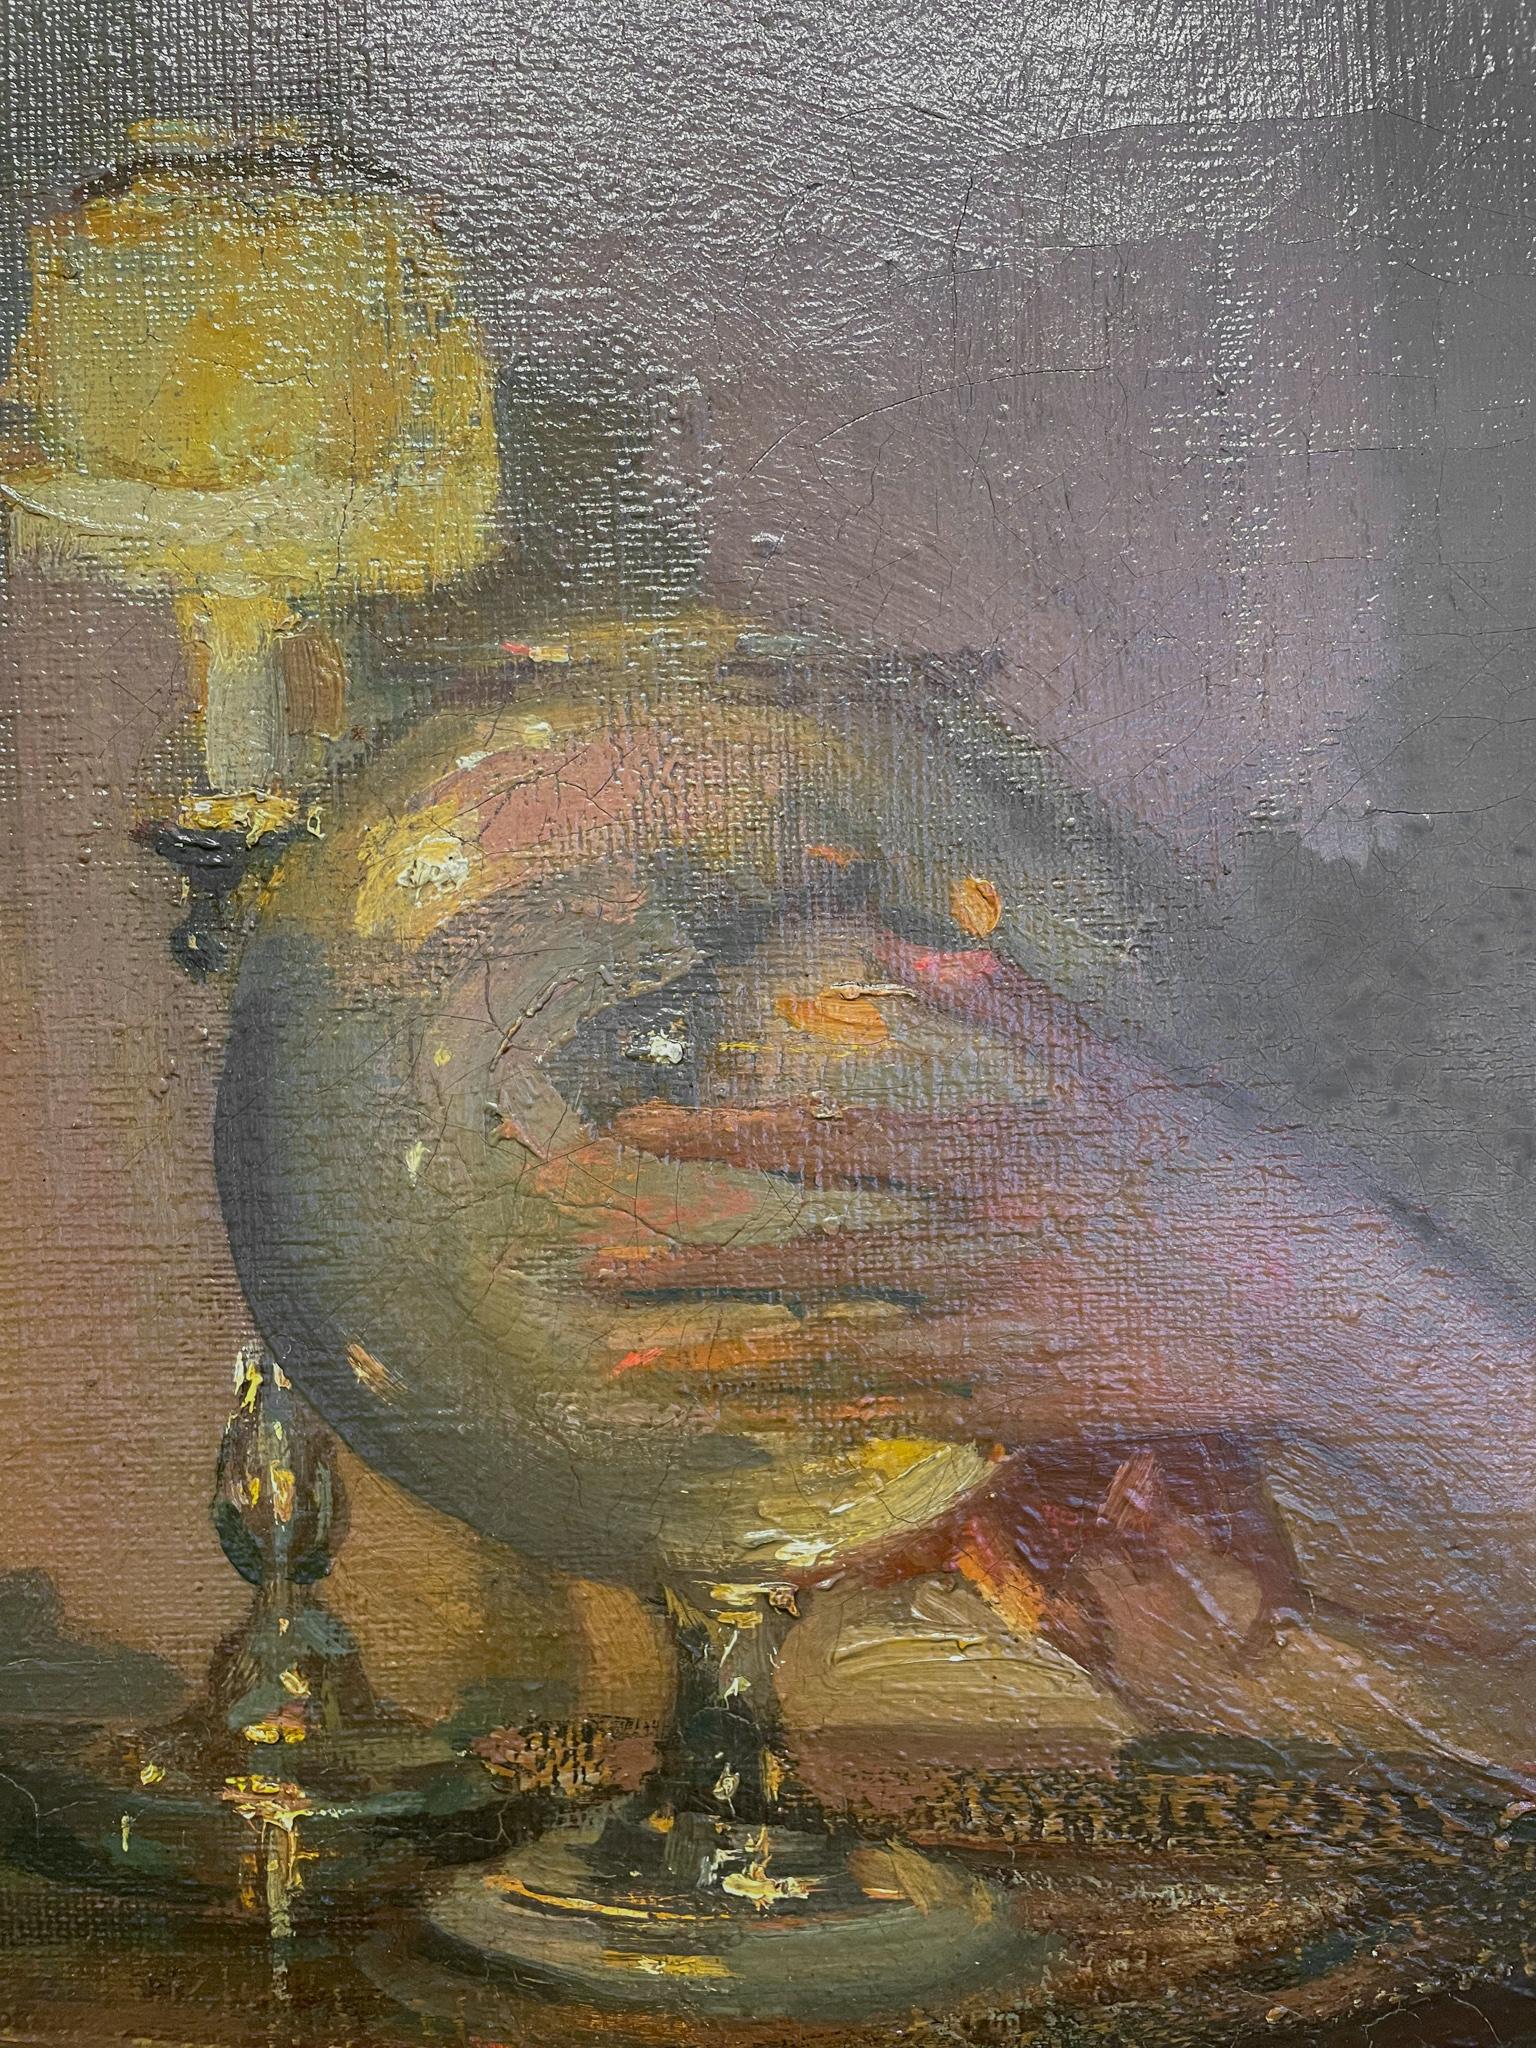 Das Goldfischglas von Richard Miller (1875-1943)
Öl auf Leinwand
37 ½ x 29 ¾ Zoll ungerahmt (95,25 x 75,565 cm)
46 ⅝ x 36 ¼ Zoll gerahmt (118.428 x 97.155)
Signiert unten rechts

Beschreibung:
Richard E. Miller war ein amerikanischer Impressionist,